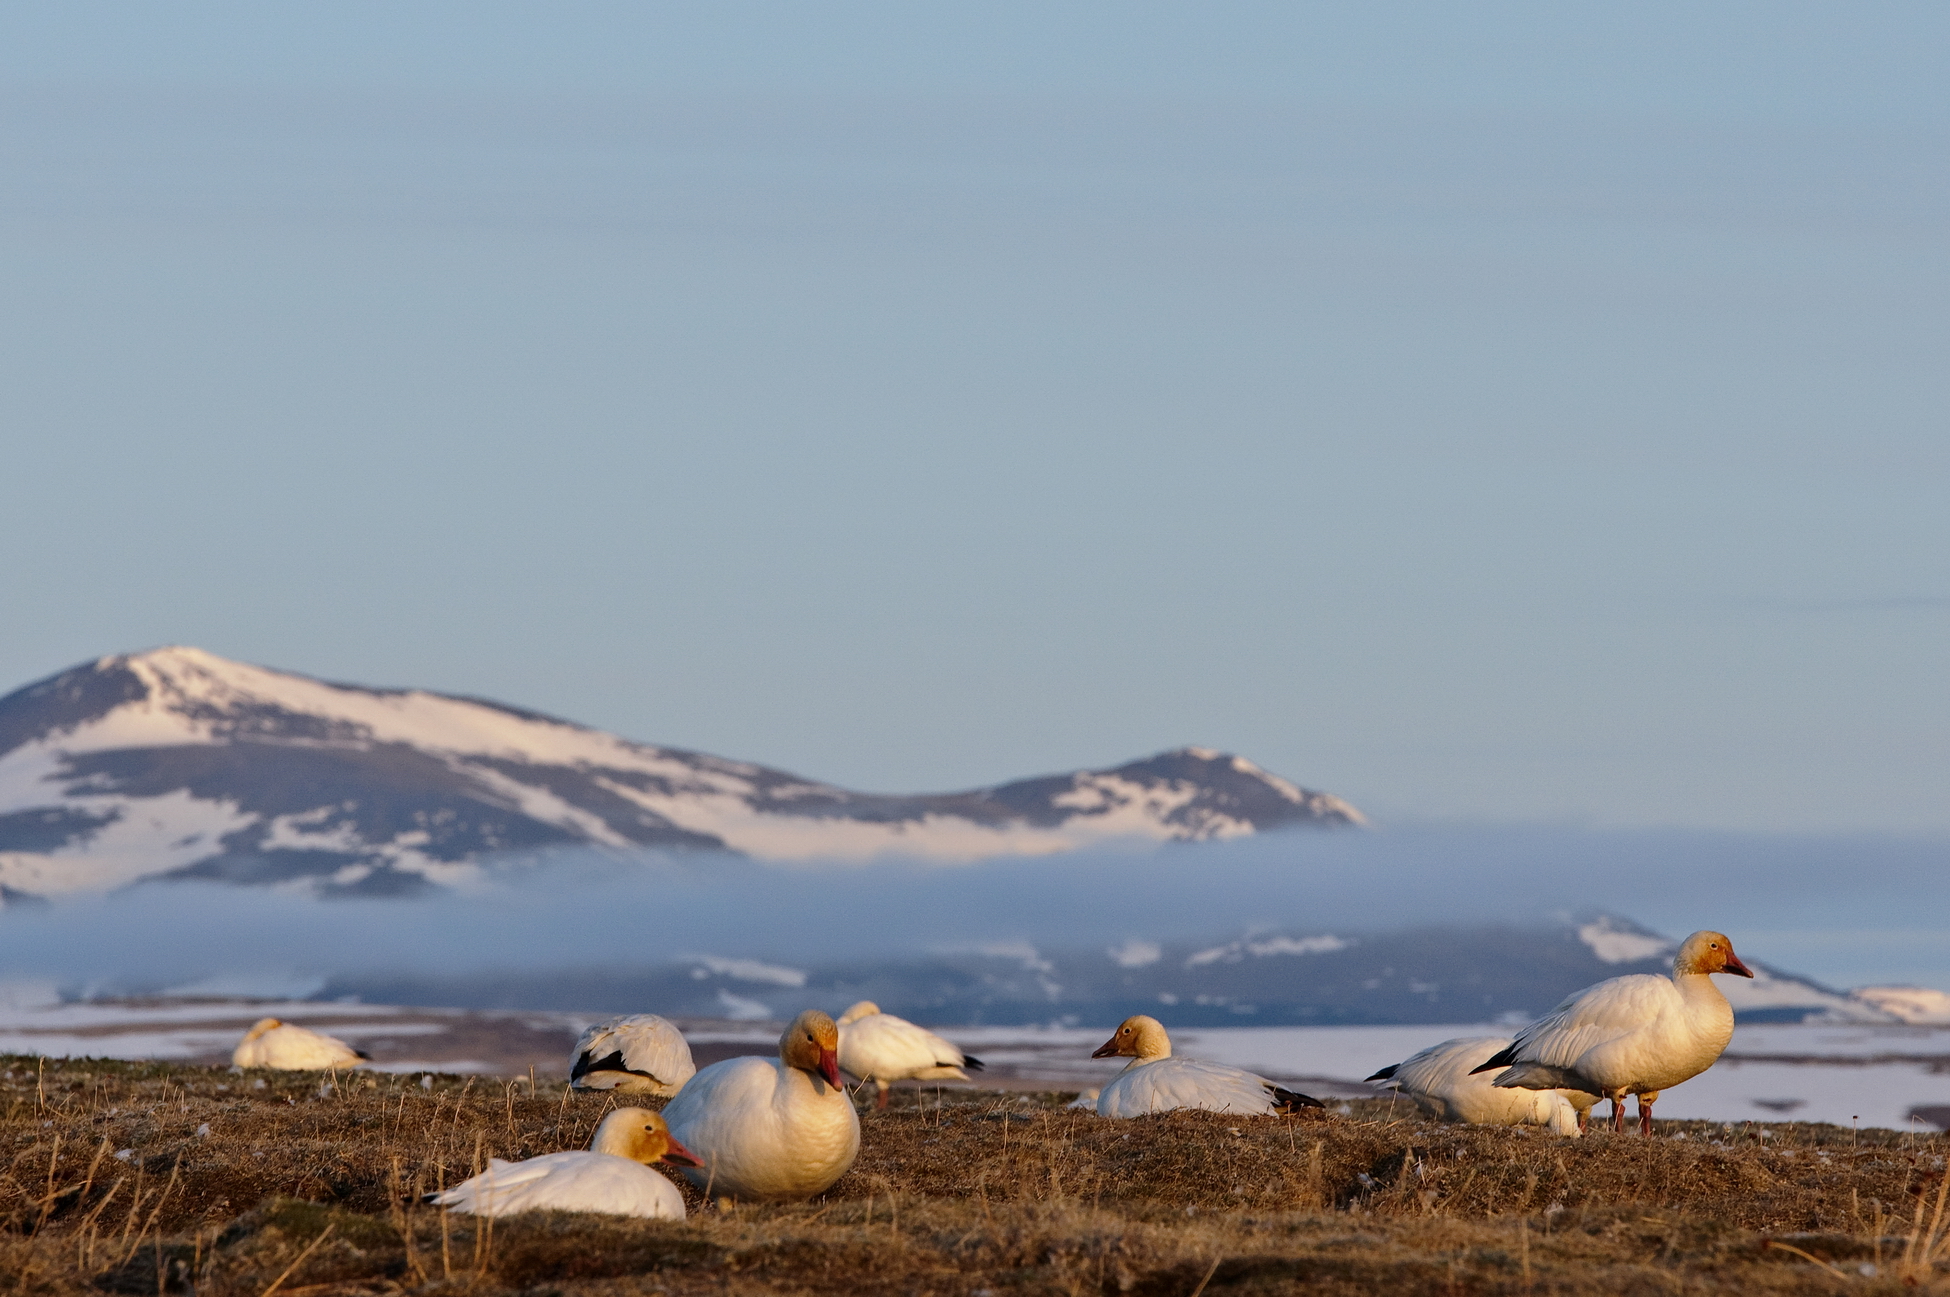 Арктика за неделю: важнейшие темы арктической повестки с 31 января по 4 февраля